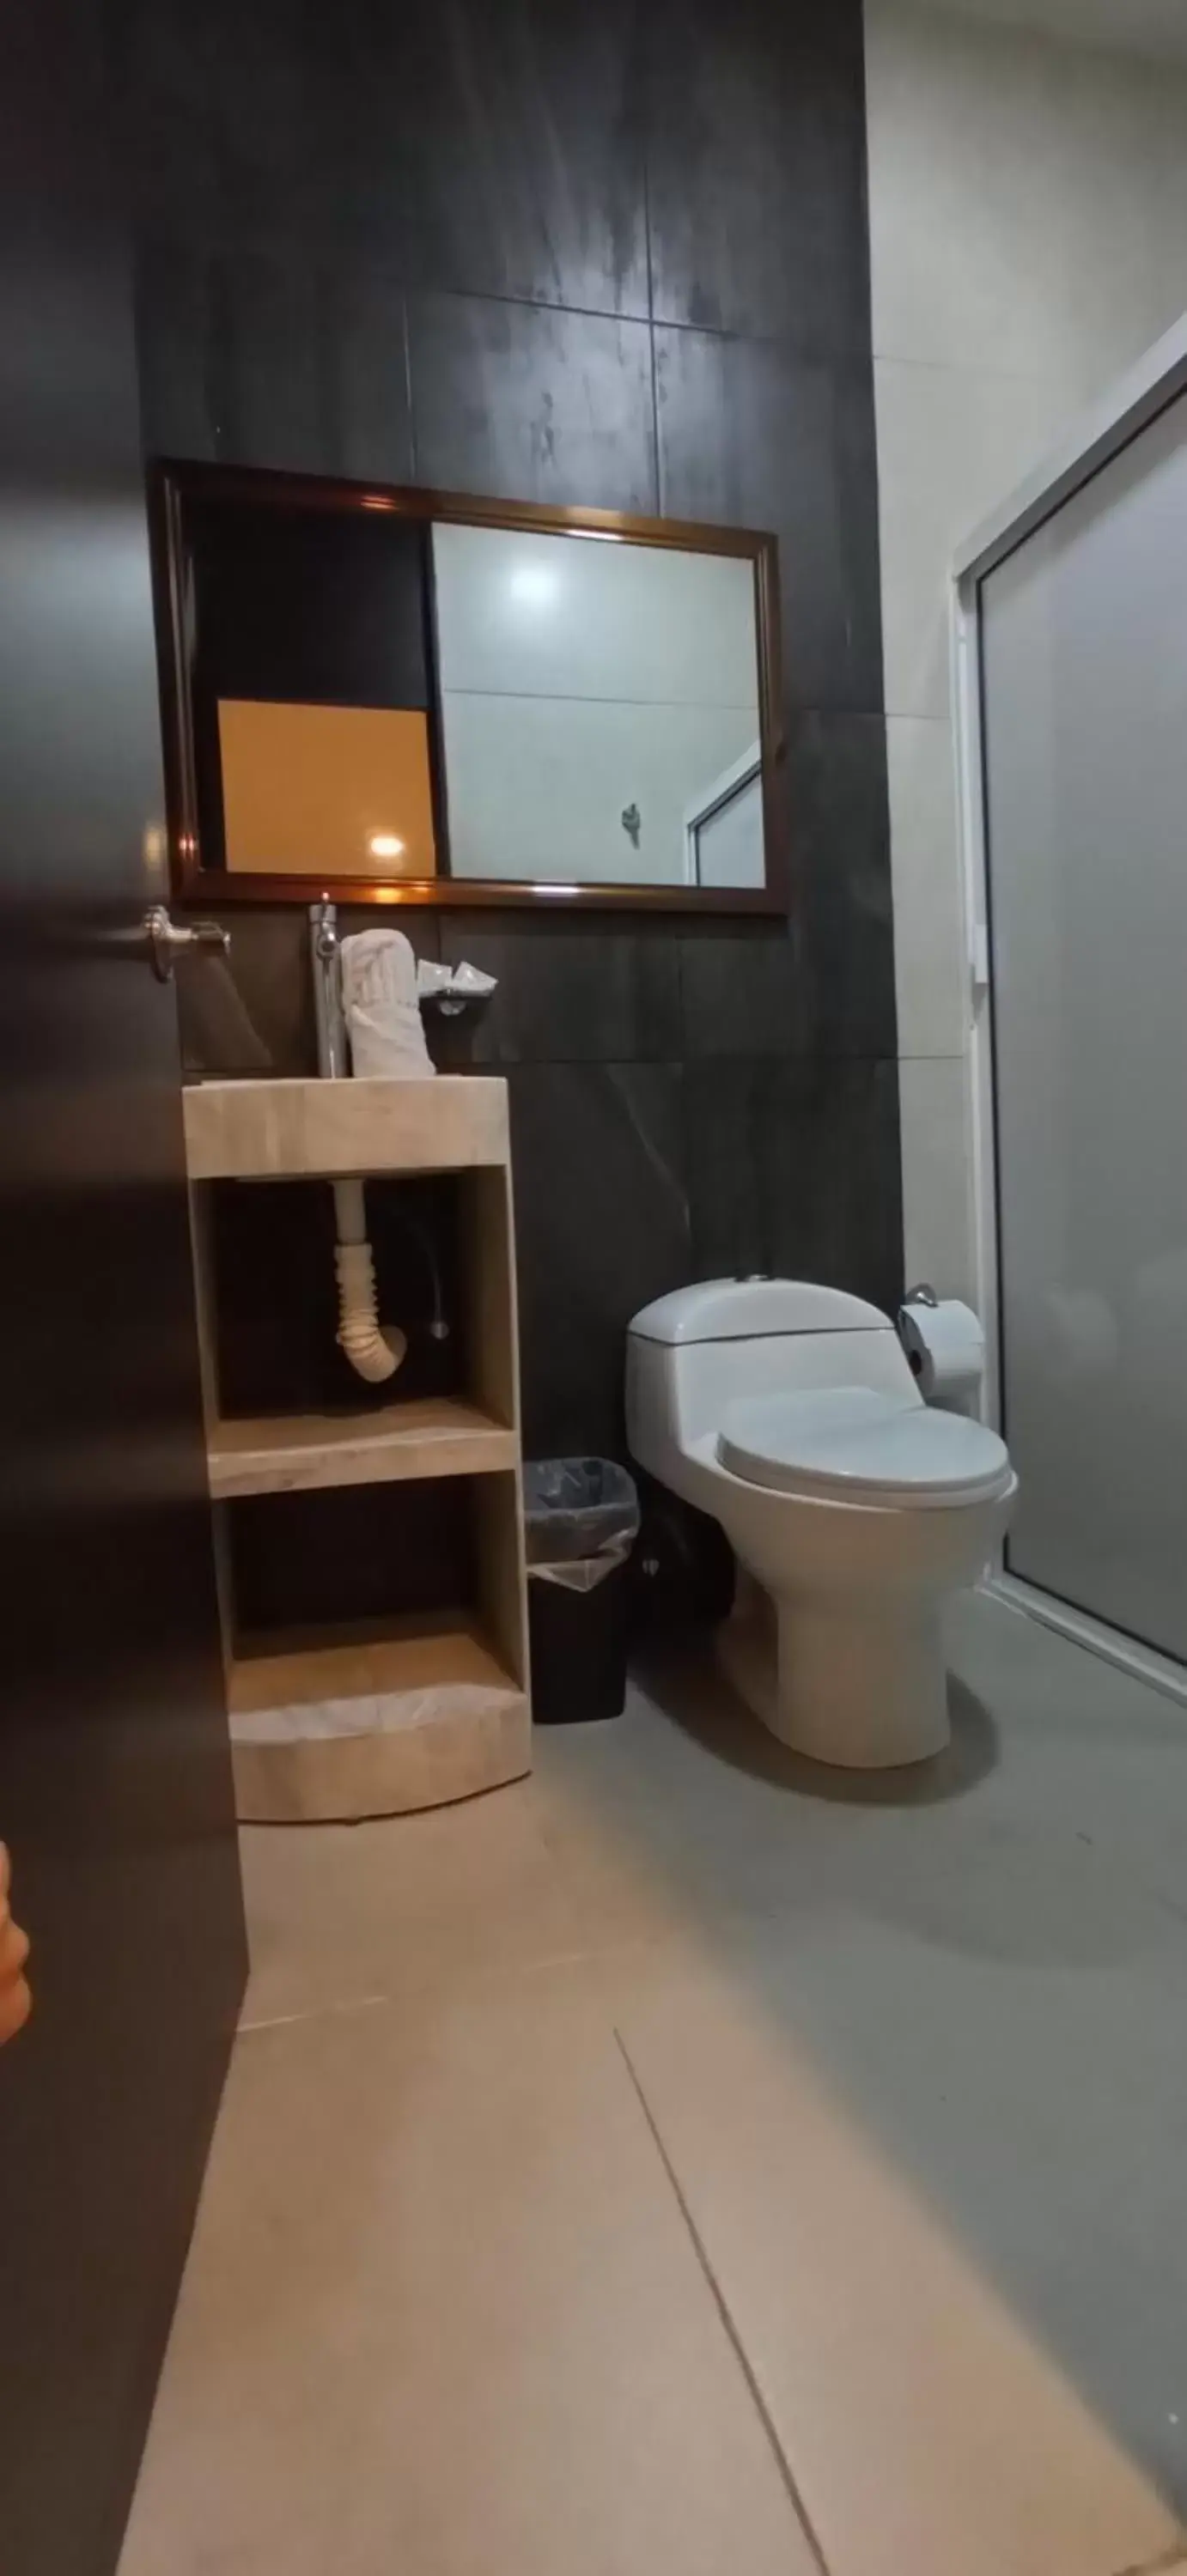 Bathroom in Hotel Tao